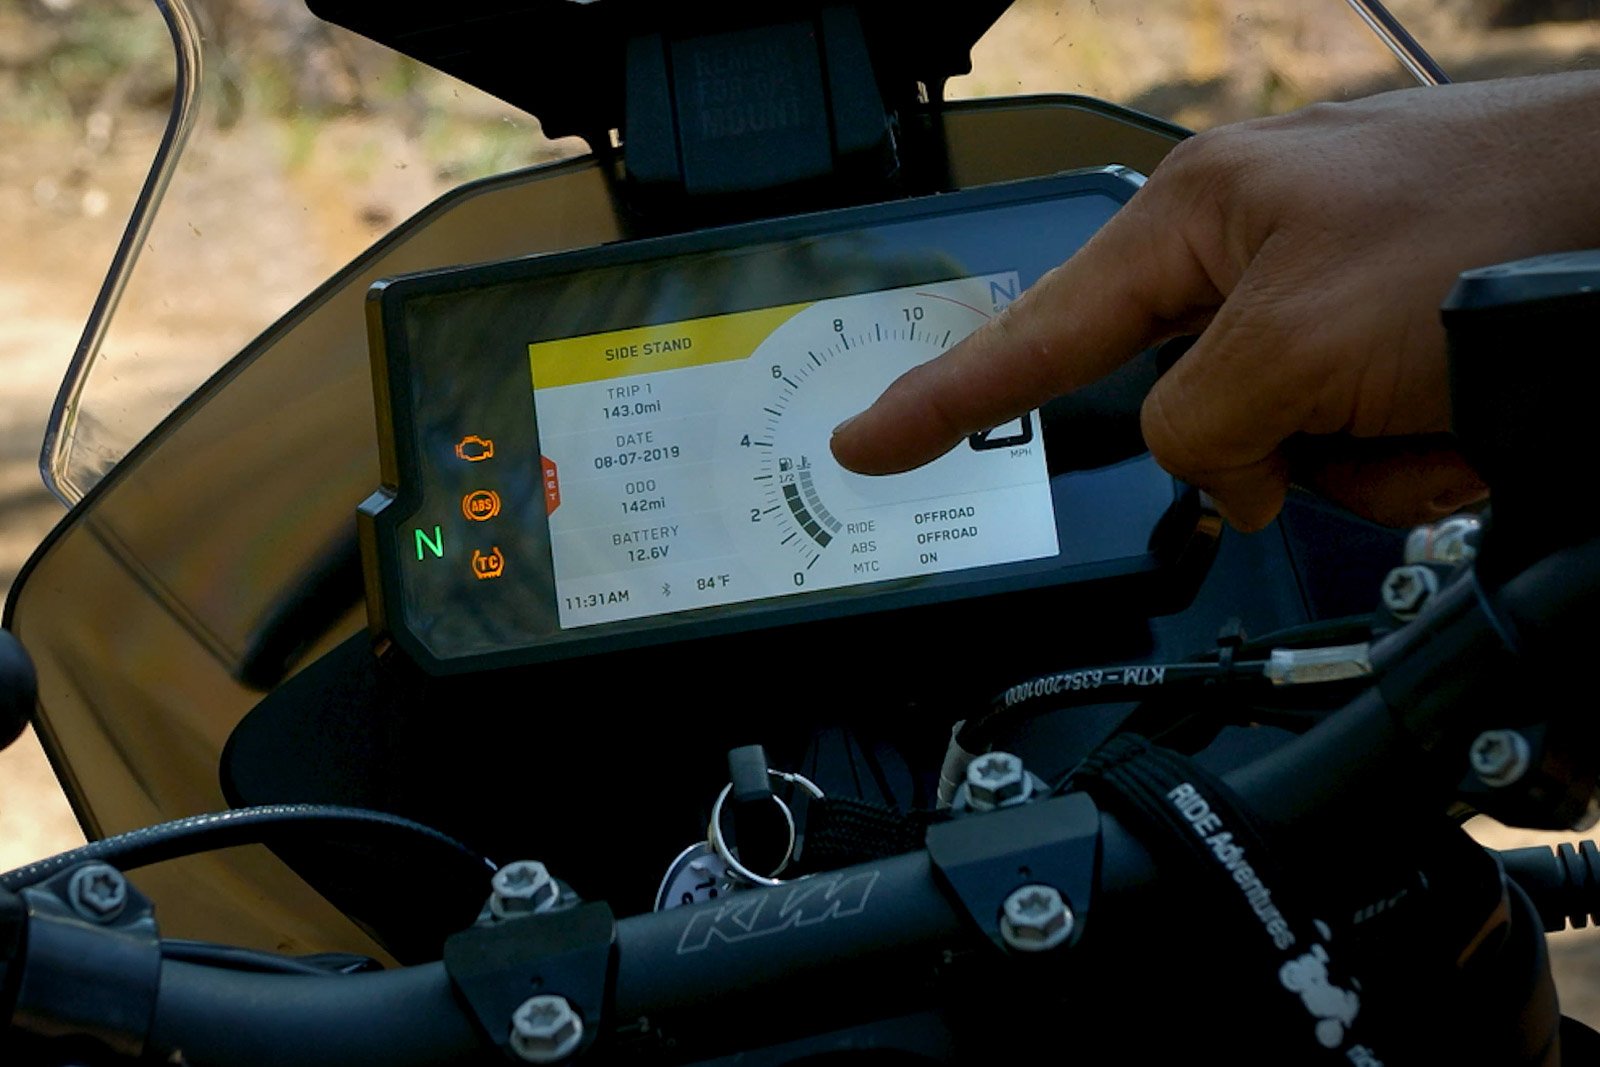 Eric points out the KTM 790's half fuel gauge